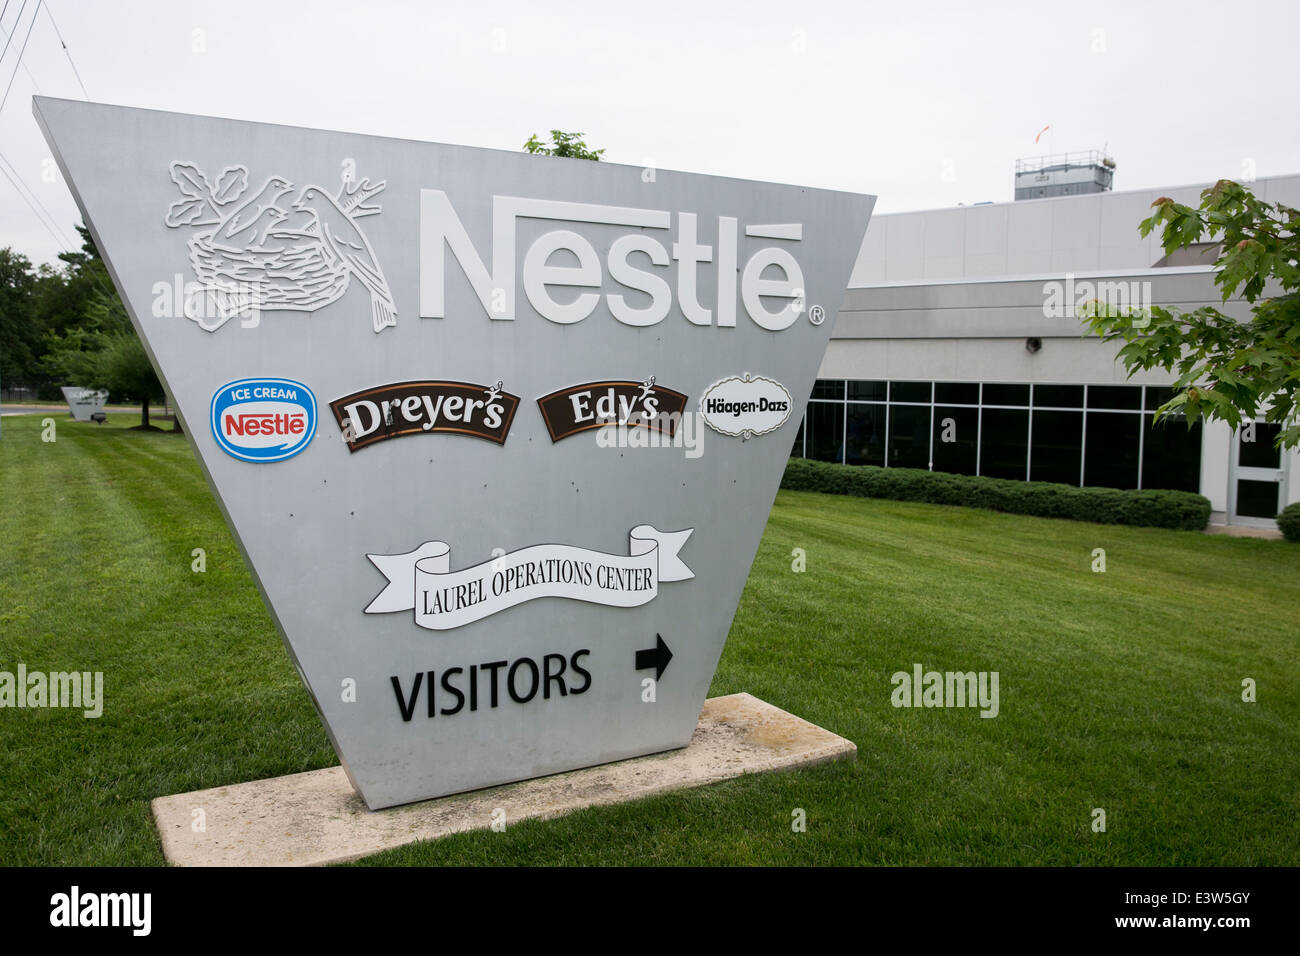 Il Centro operativo Laurel di Nestle Nord America. Lo stabilimento produce i prodotti Dreyer's, Edy's, Haagen-Daz e Nestle Ice Cream. Foto Stock